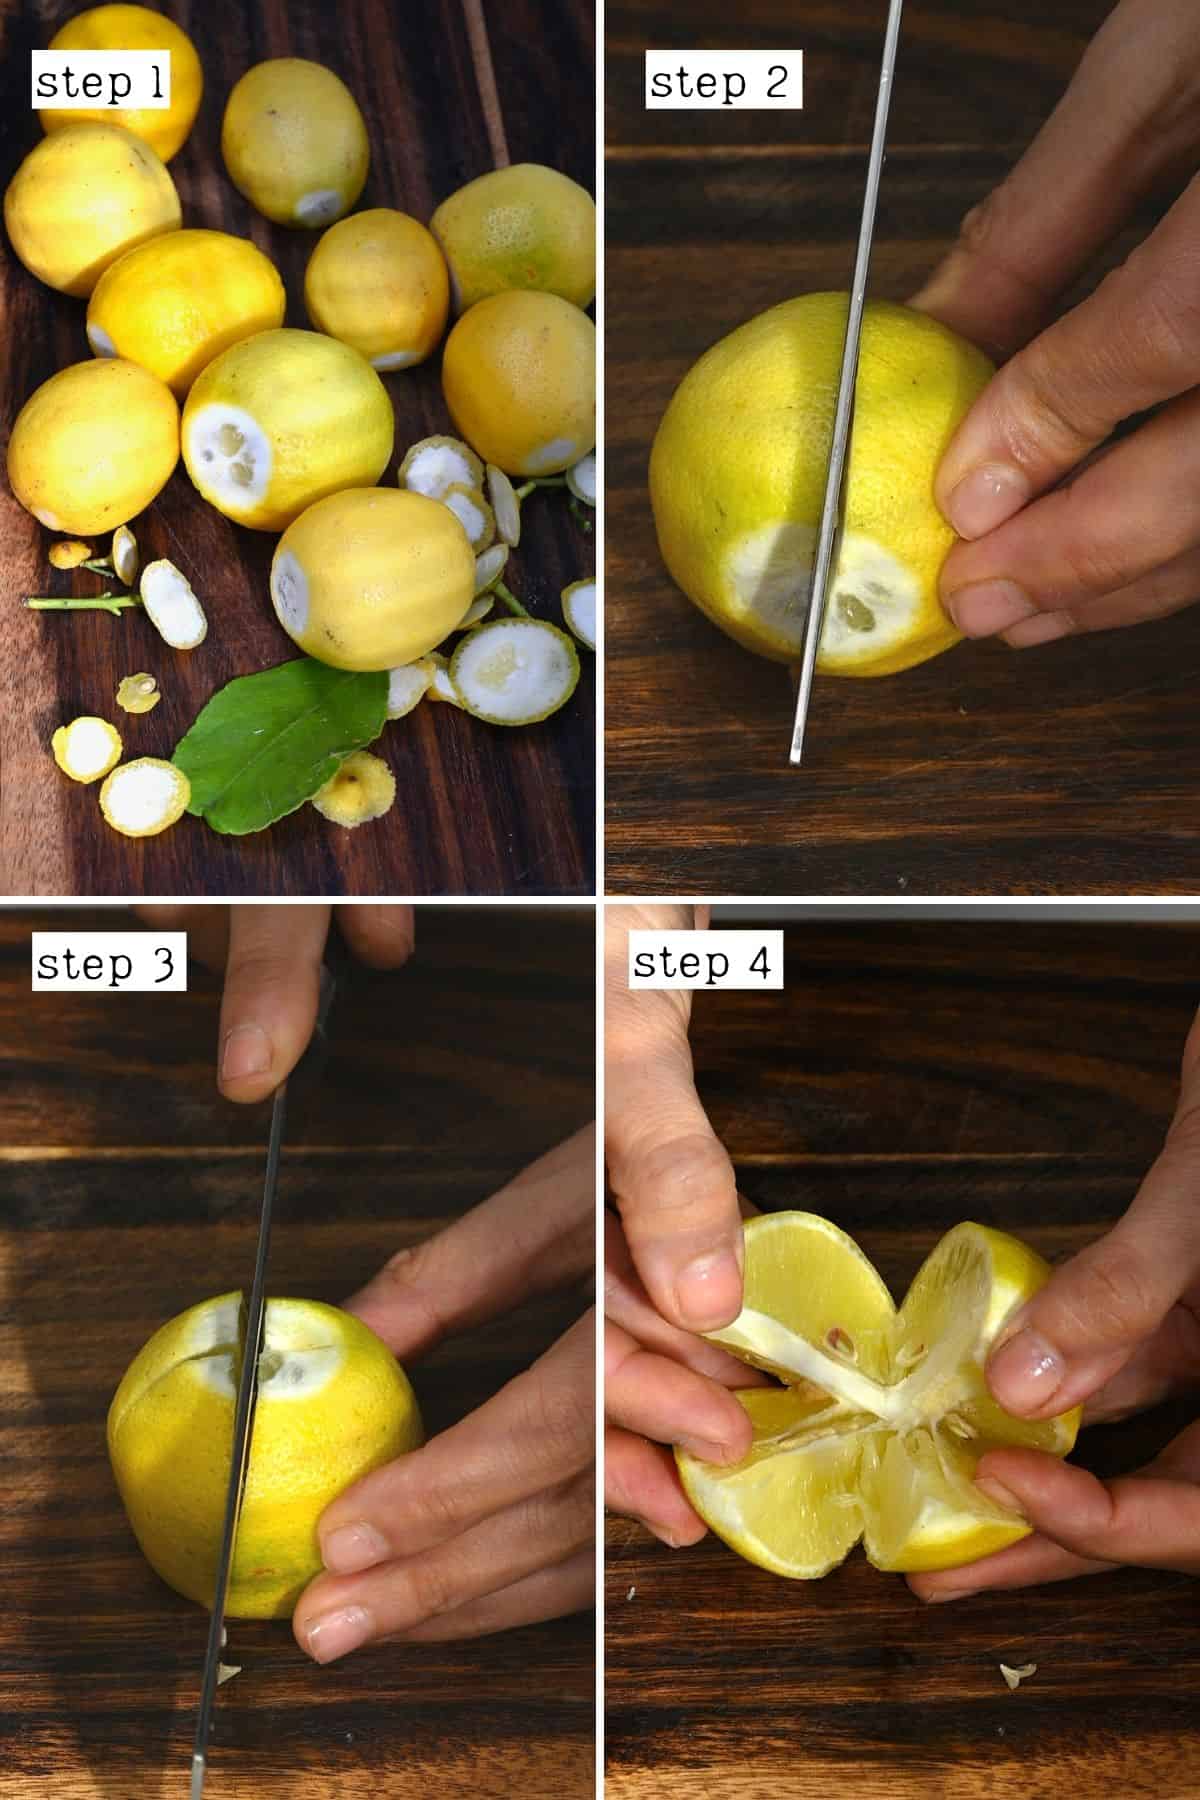 Steps for cutting lemons